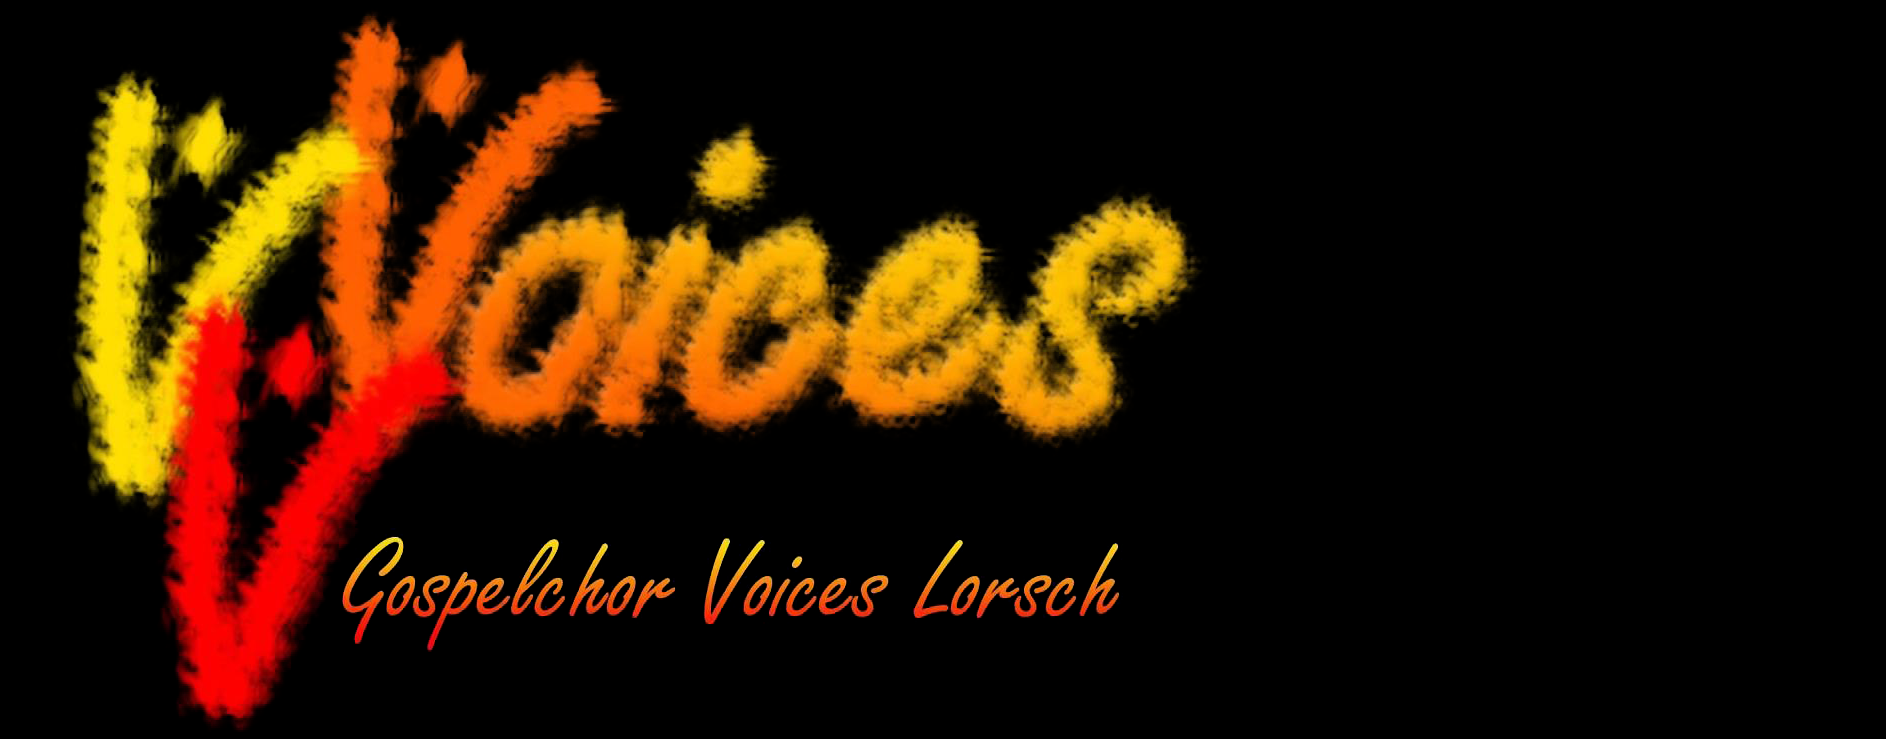 Gospelchor Voices Lorsch e.V.